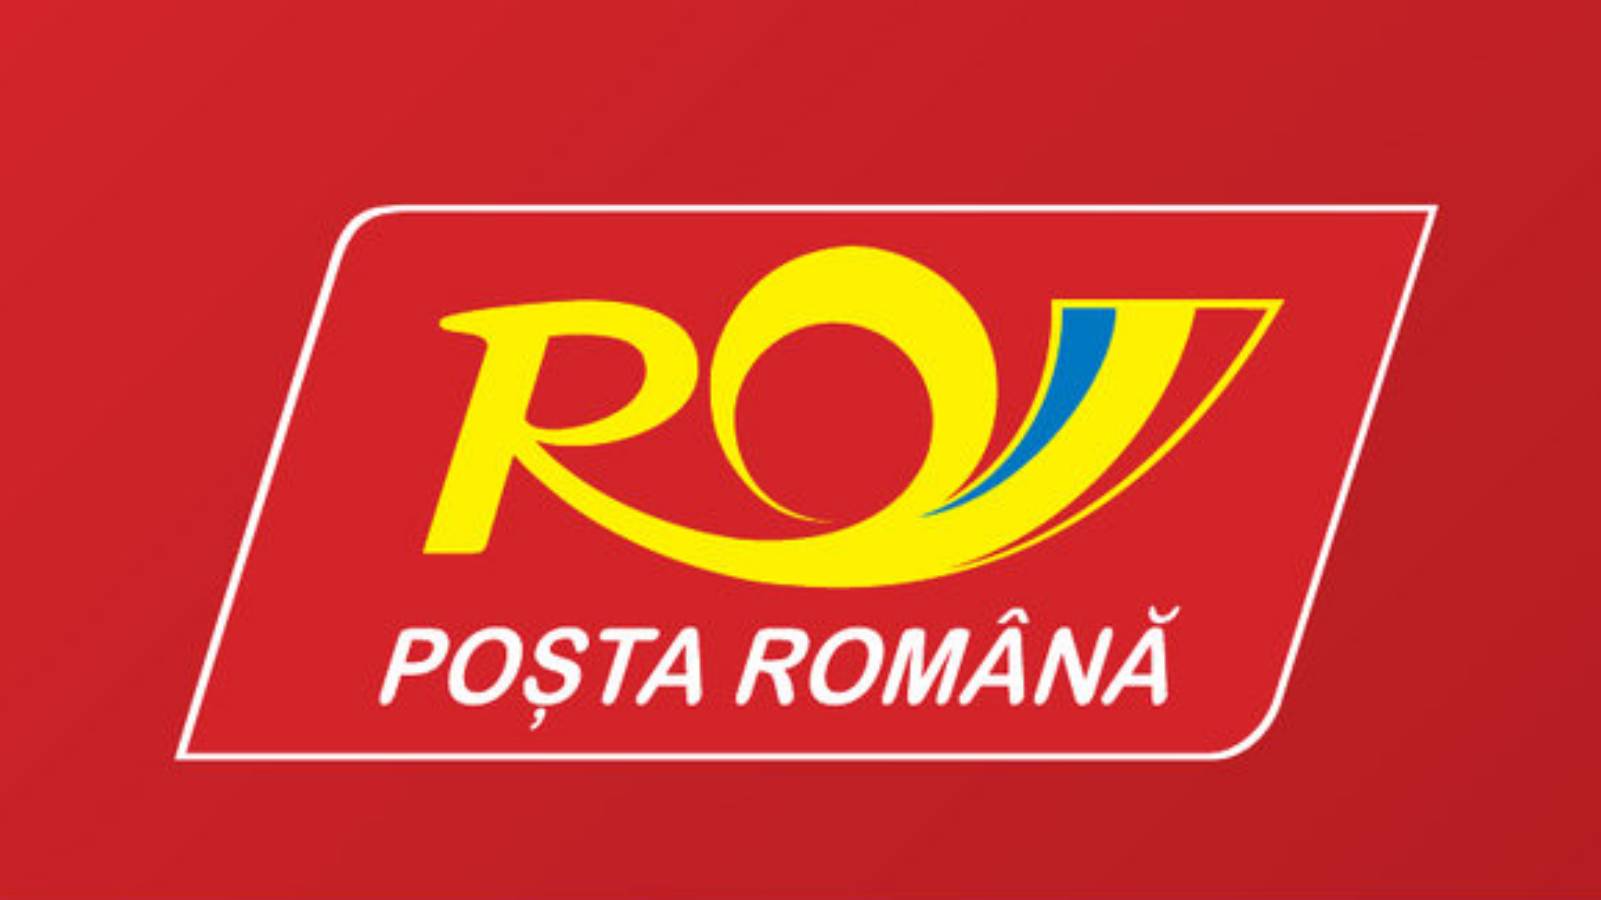 Rumänska vykort